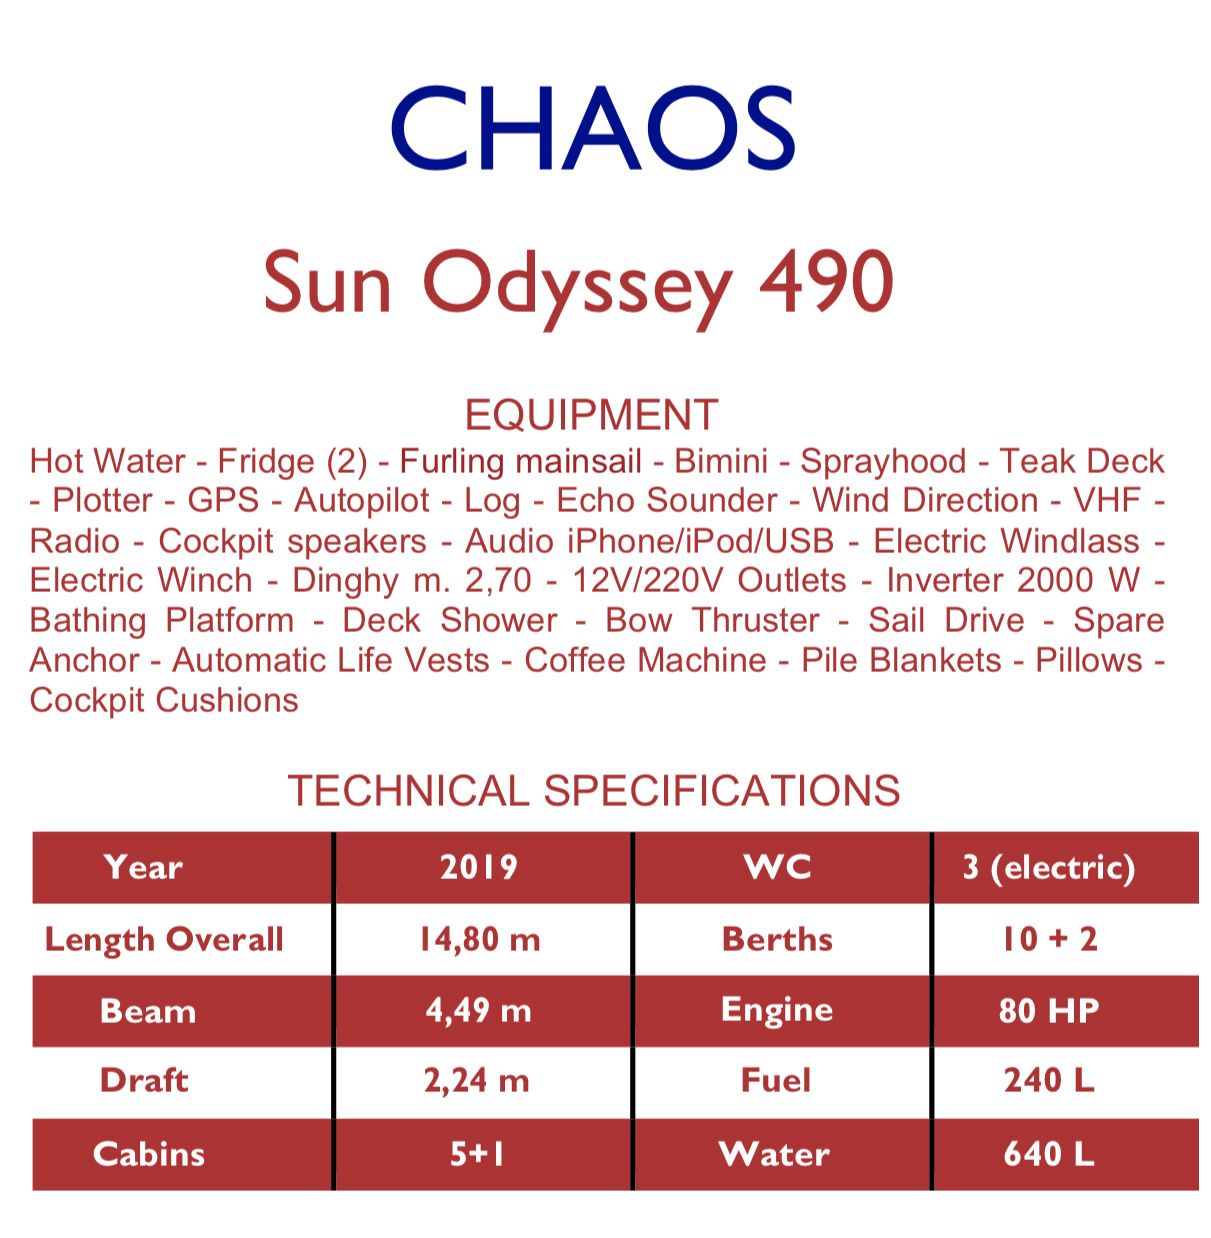 Sun Odyssey 490 - Yacht Charter Capo d'Orlando & Boat hire in Italy Sicily Aeolian Islands Capo d'Orlando Capo d'Orlando Marina 3